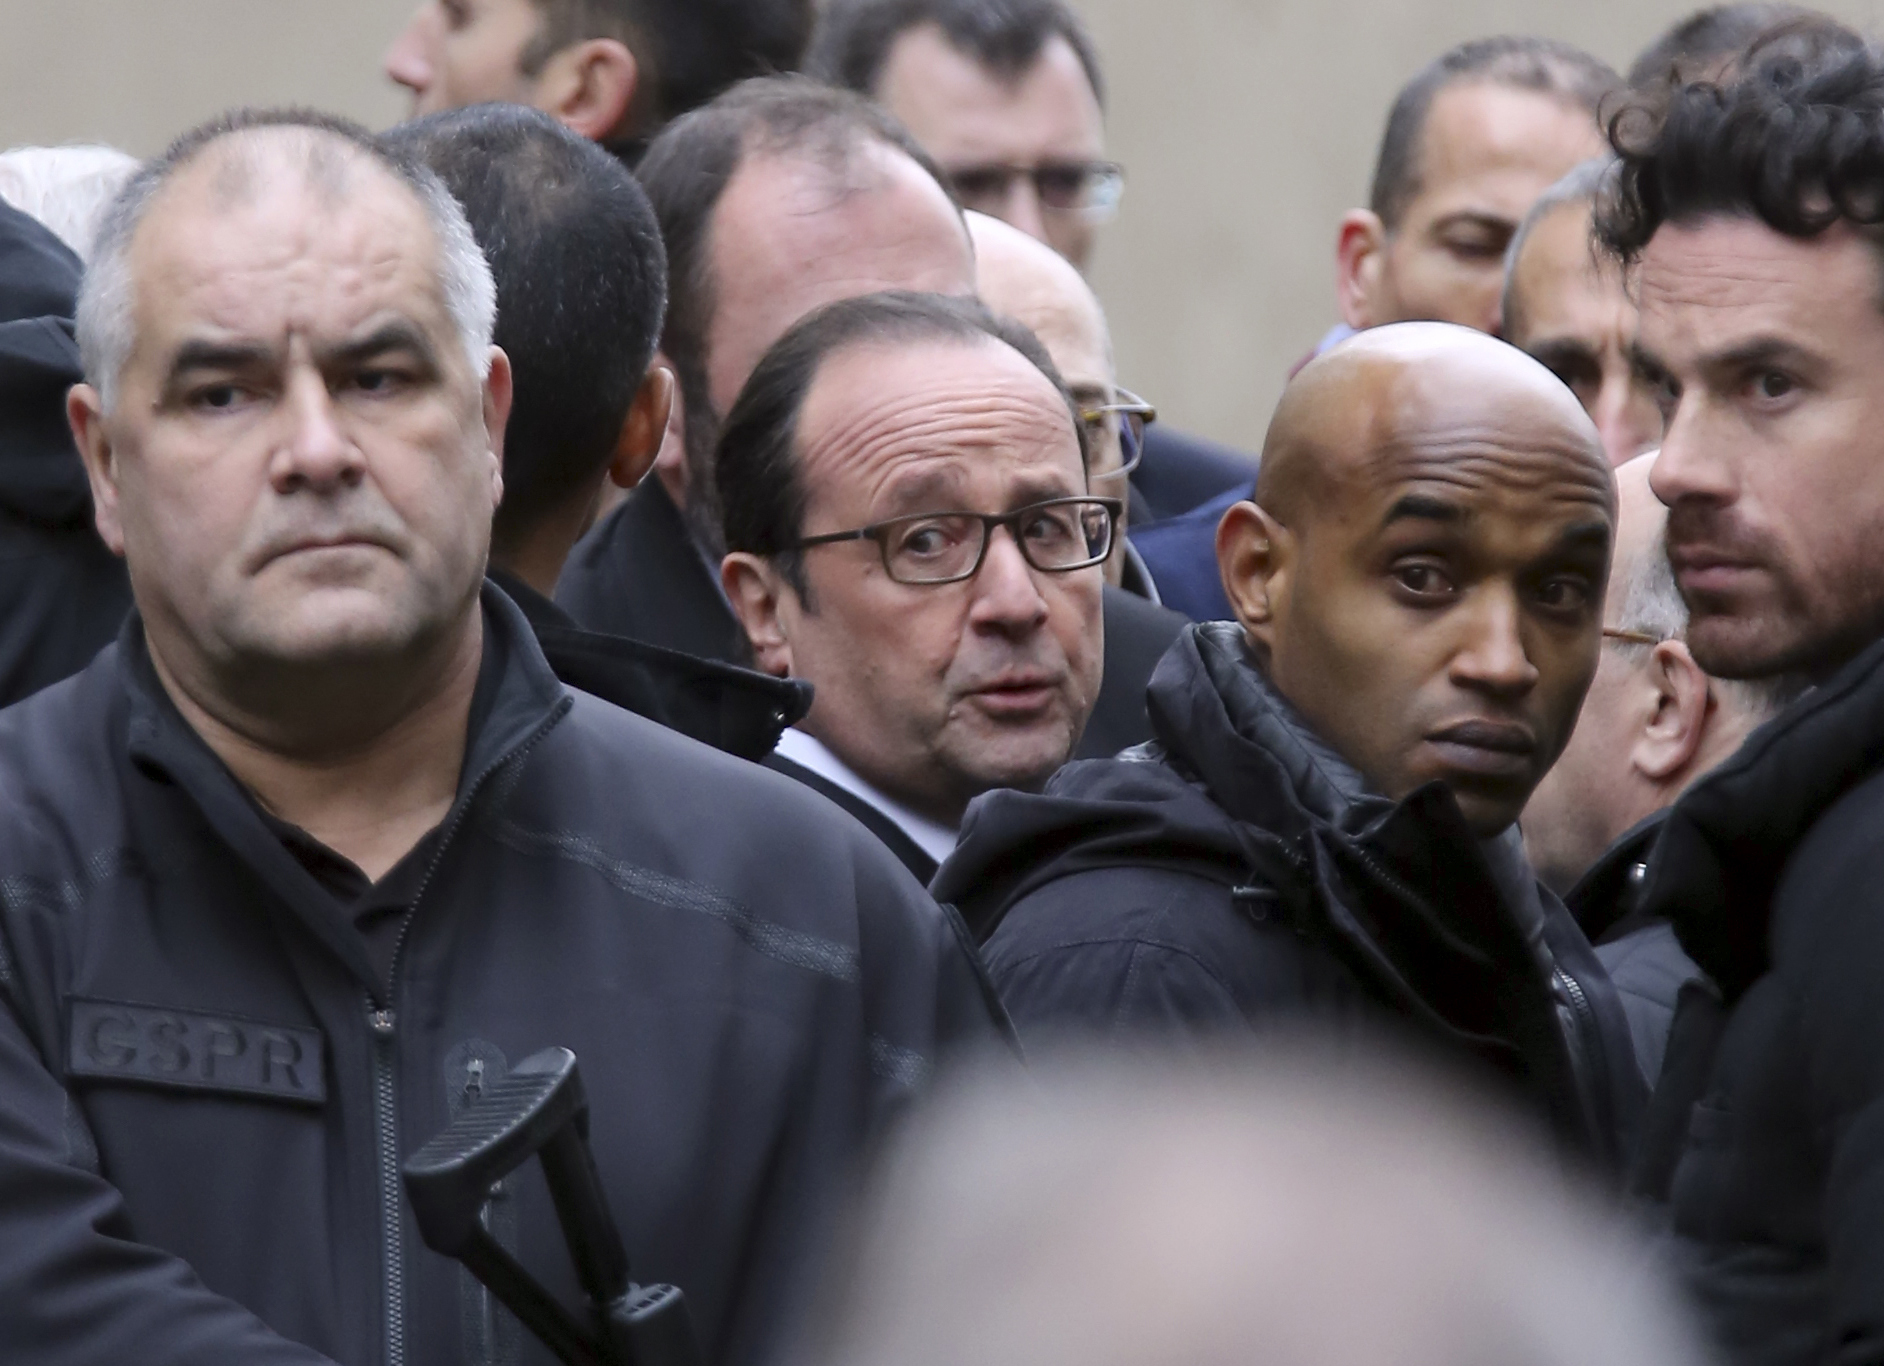 Staatschef François Hollande besuchte nur gut eine Stunde später den Tatort und sprach in einem improvisierten Auftritt von einer «aussergewöhnlichen Barbarei».